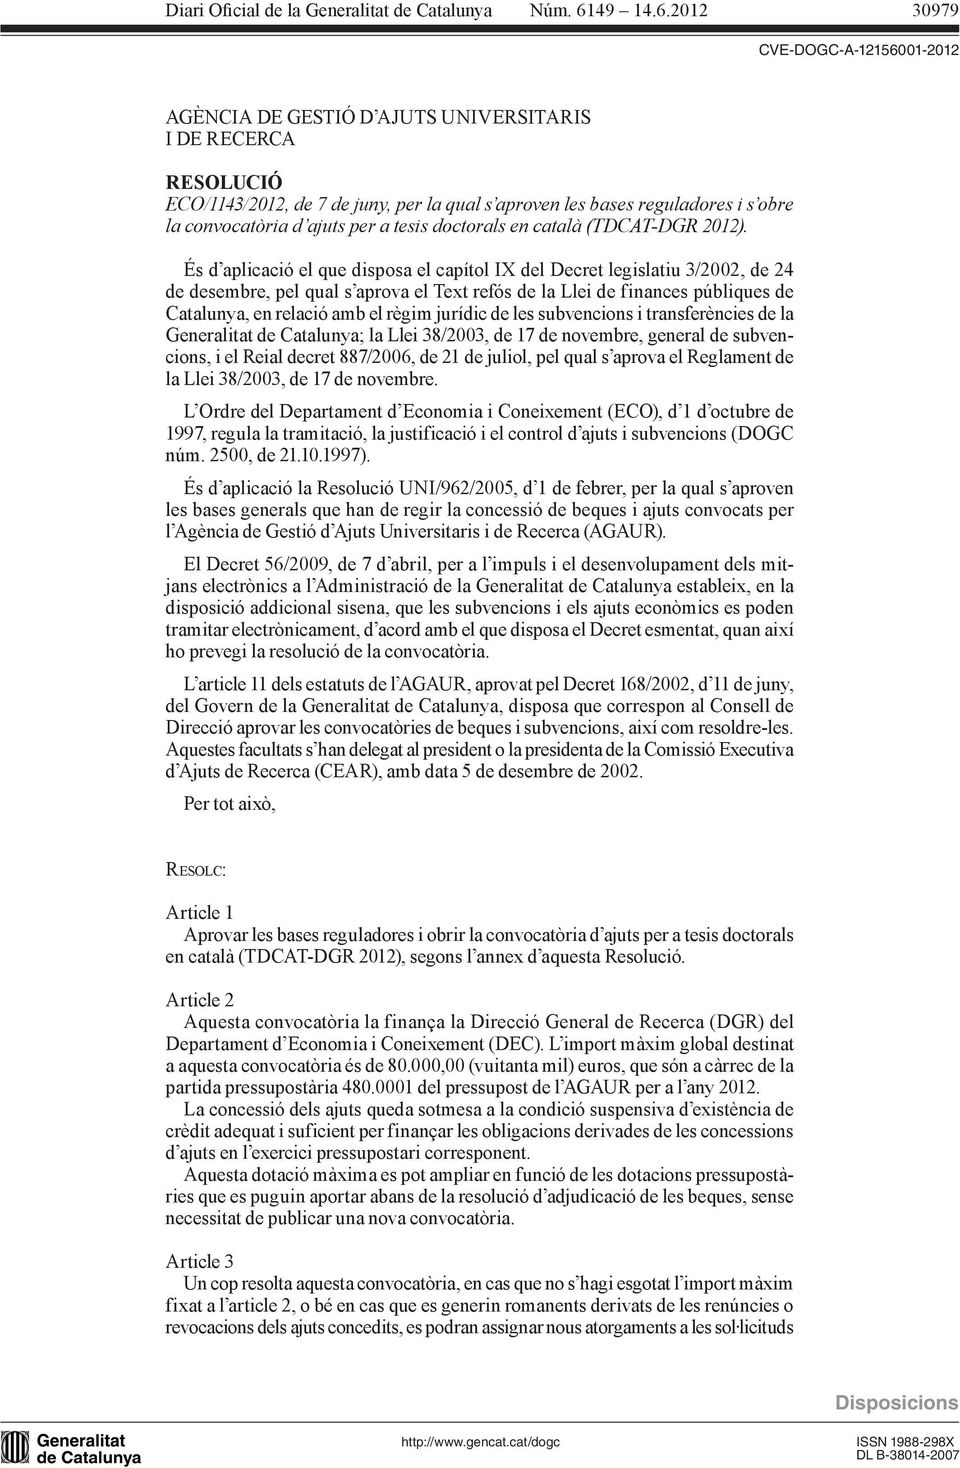 És d aplicació el que disposa el capítol IX del Decret legislatiu 3/2002, de 24 de desembre, pel qual s aprova el Text refós de la Llei de finances públiques de Catalunya, en relació amb el règim